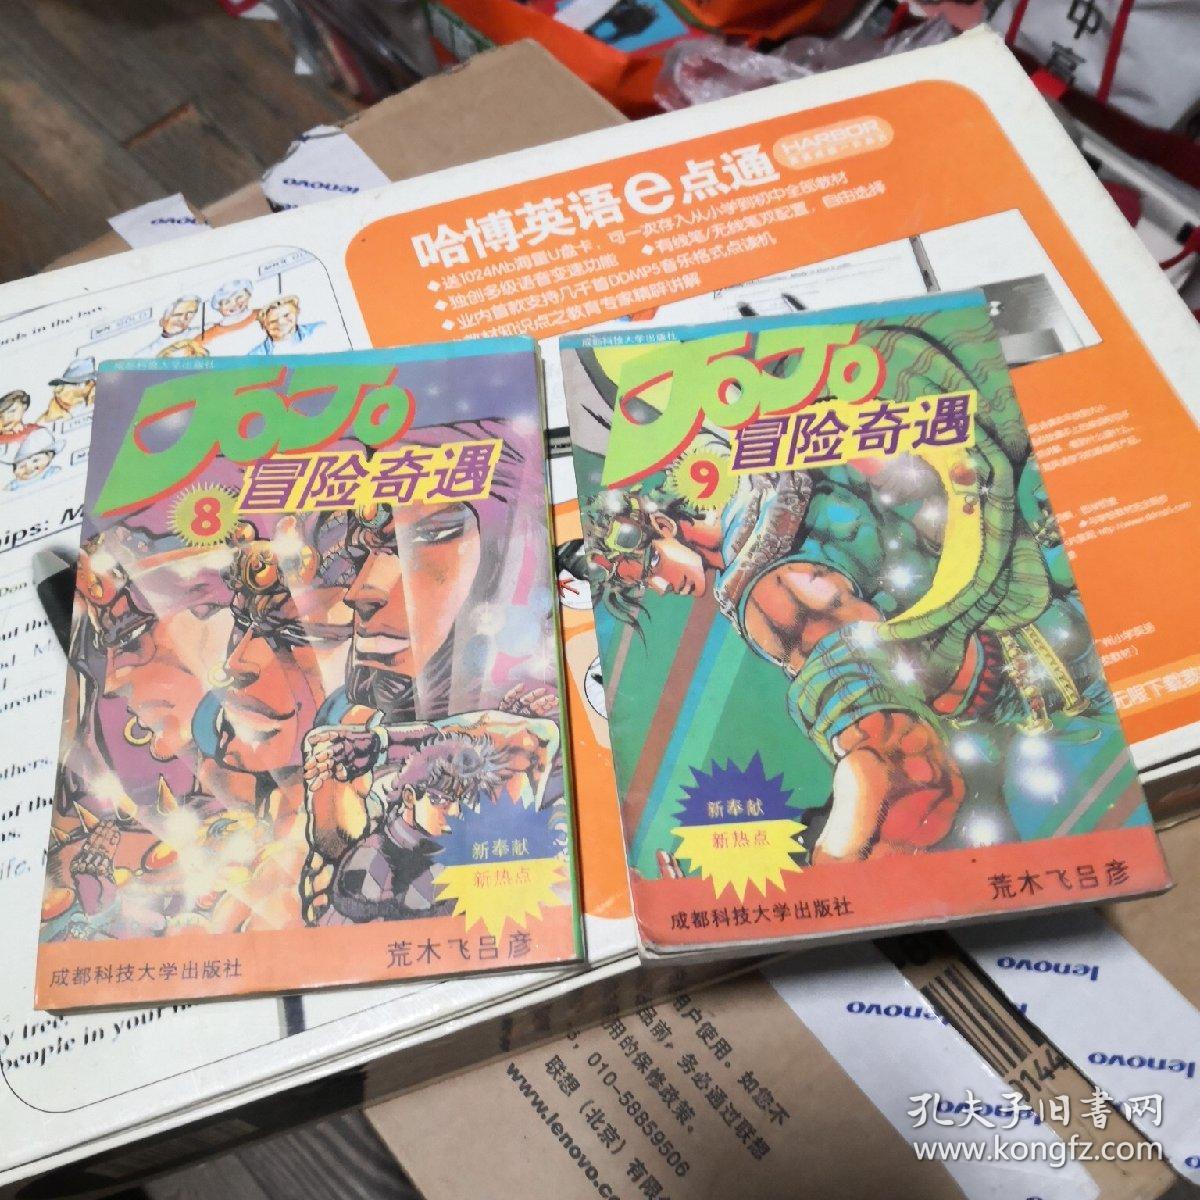 卡通漫画32K:jojo乔乔冒险奇遇2本合售 （8，9）   成都科技大学出版社